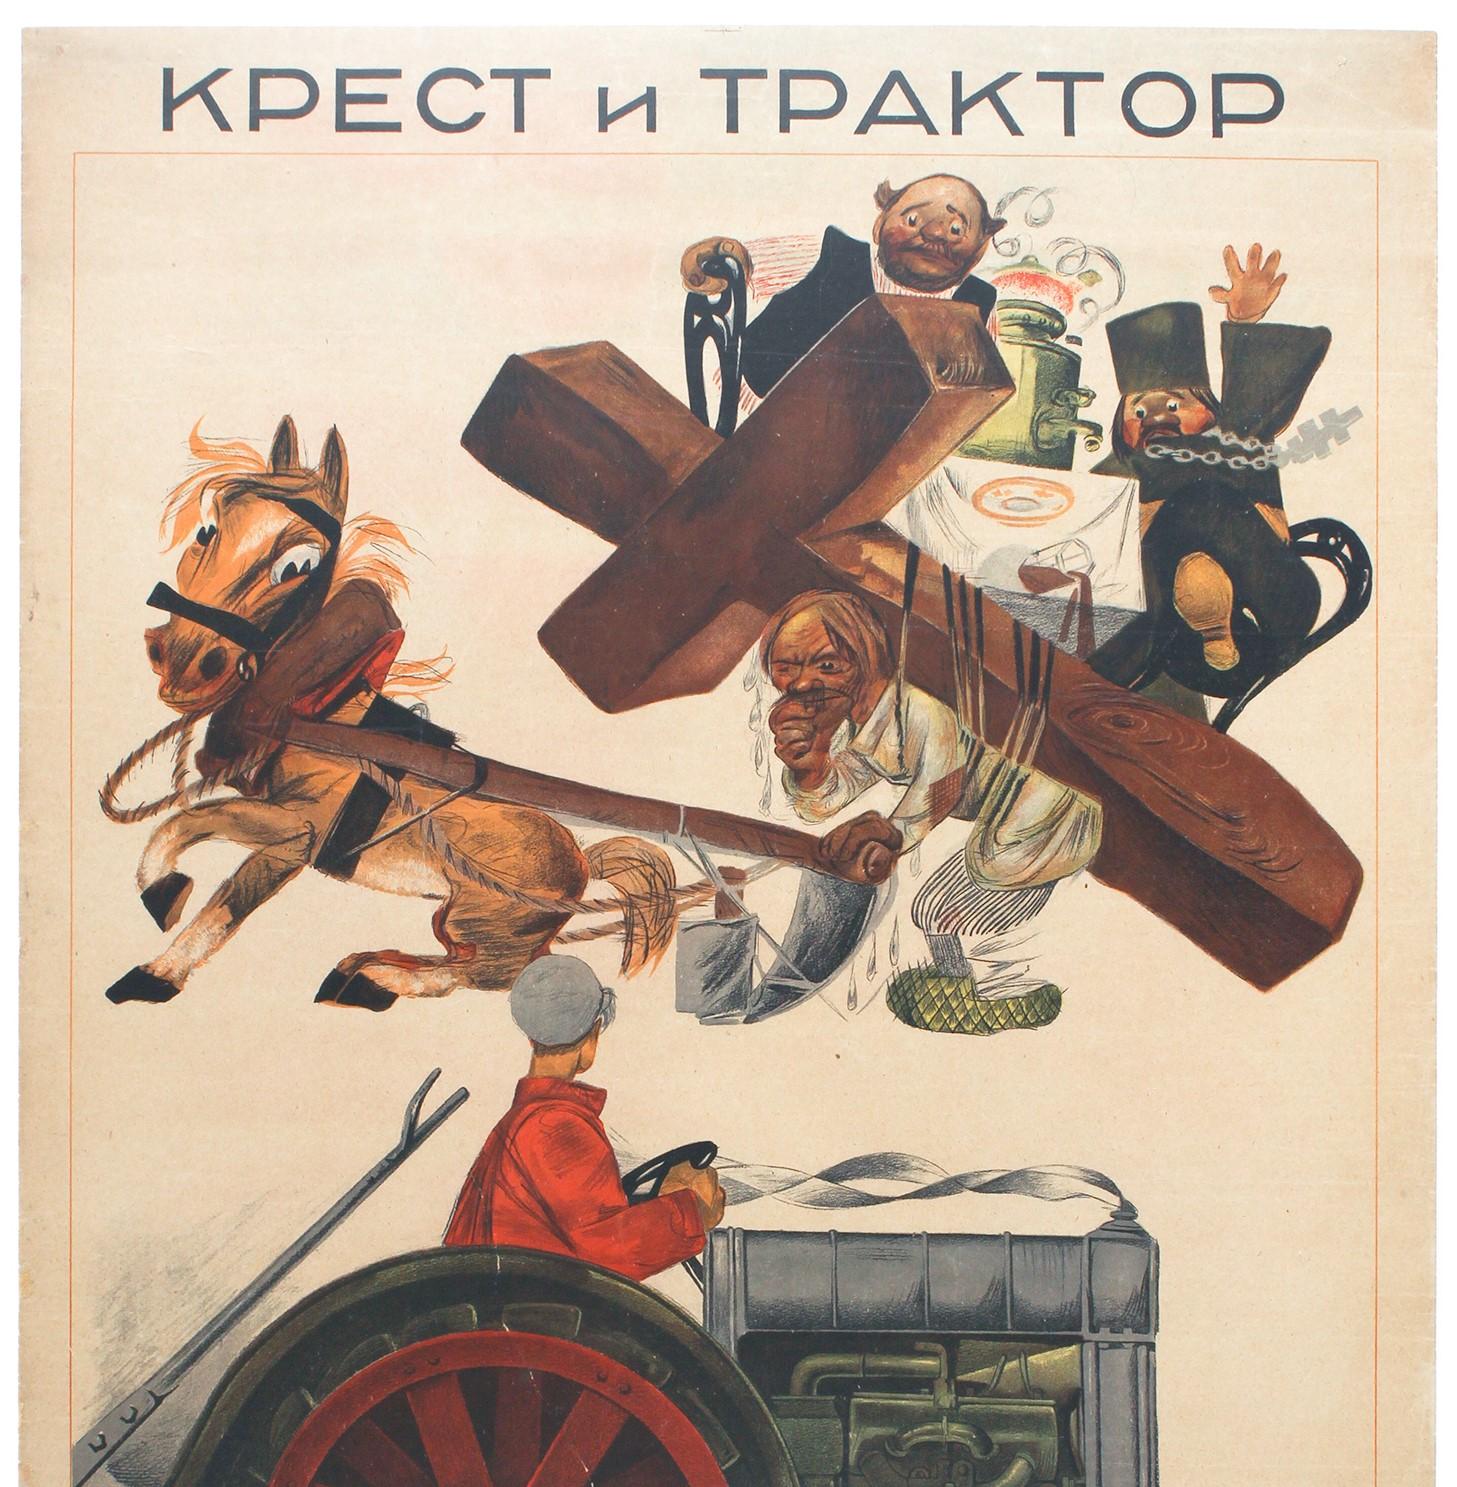 Affiche originale de propagande communiste antireligieuse intitulée Крест и Трактор / Cross and Tractor (Croix et tracteur), réalisée par Mikhaïl Cheremnykh (1890-1962) sur la base d'un poème de Demyan Bedny (1883-1945) sur l'exploitation des